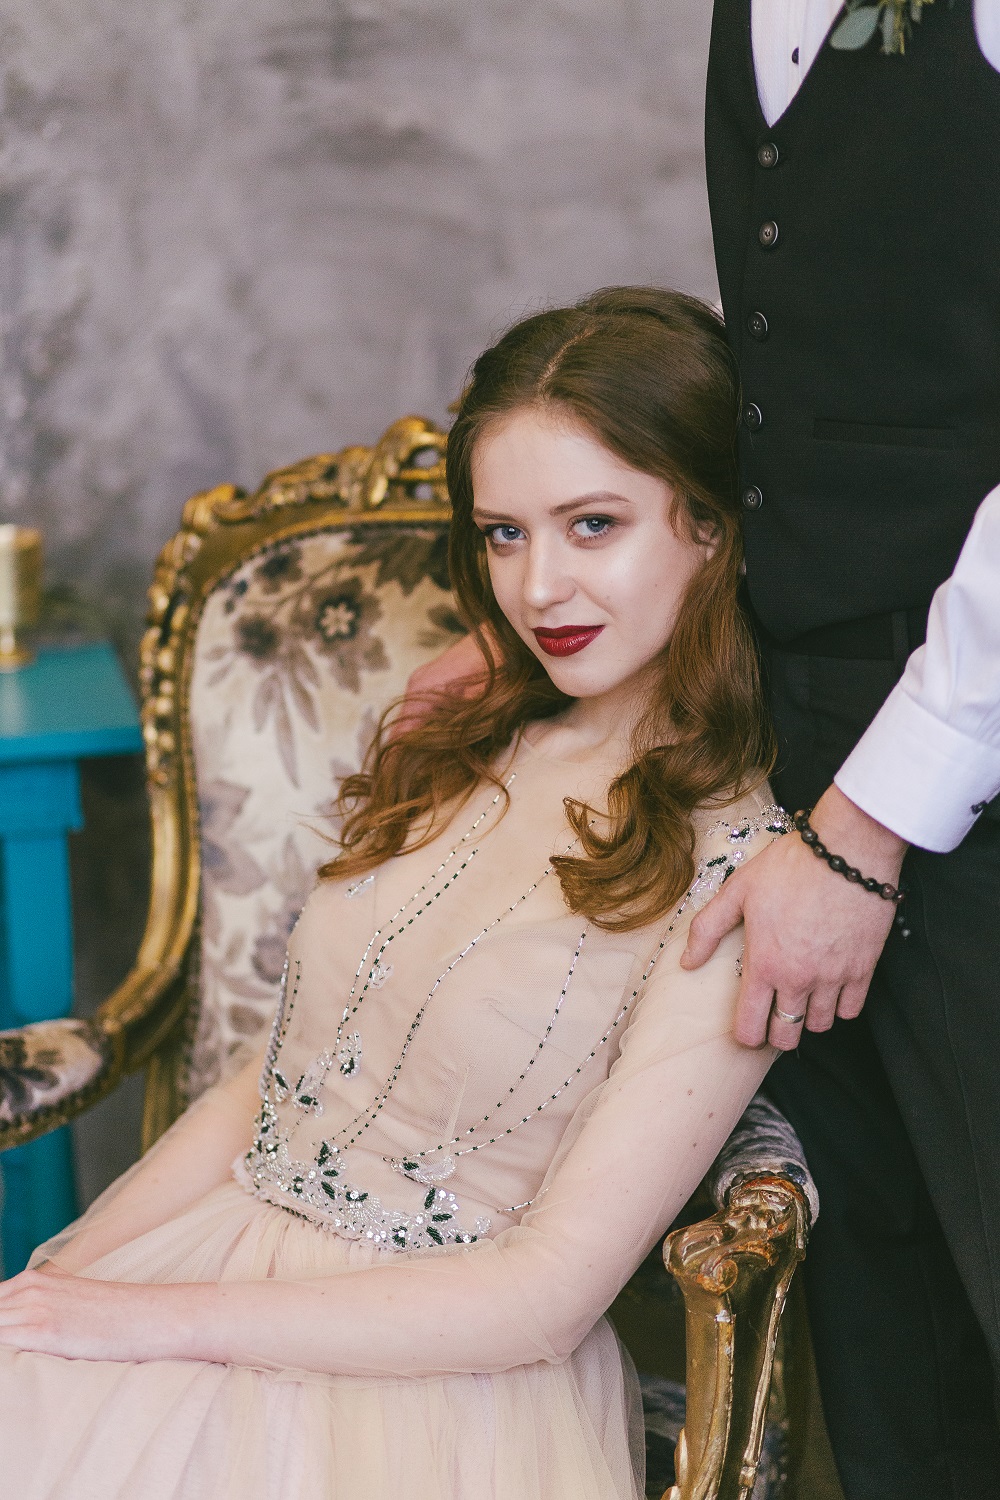 Макияж - Невесты - Примеры свадебного макияжа от визажиста Марии Красковской